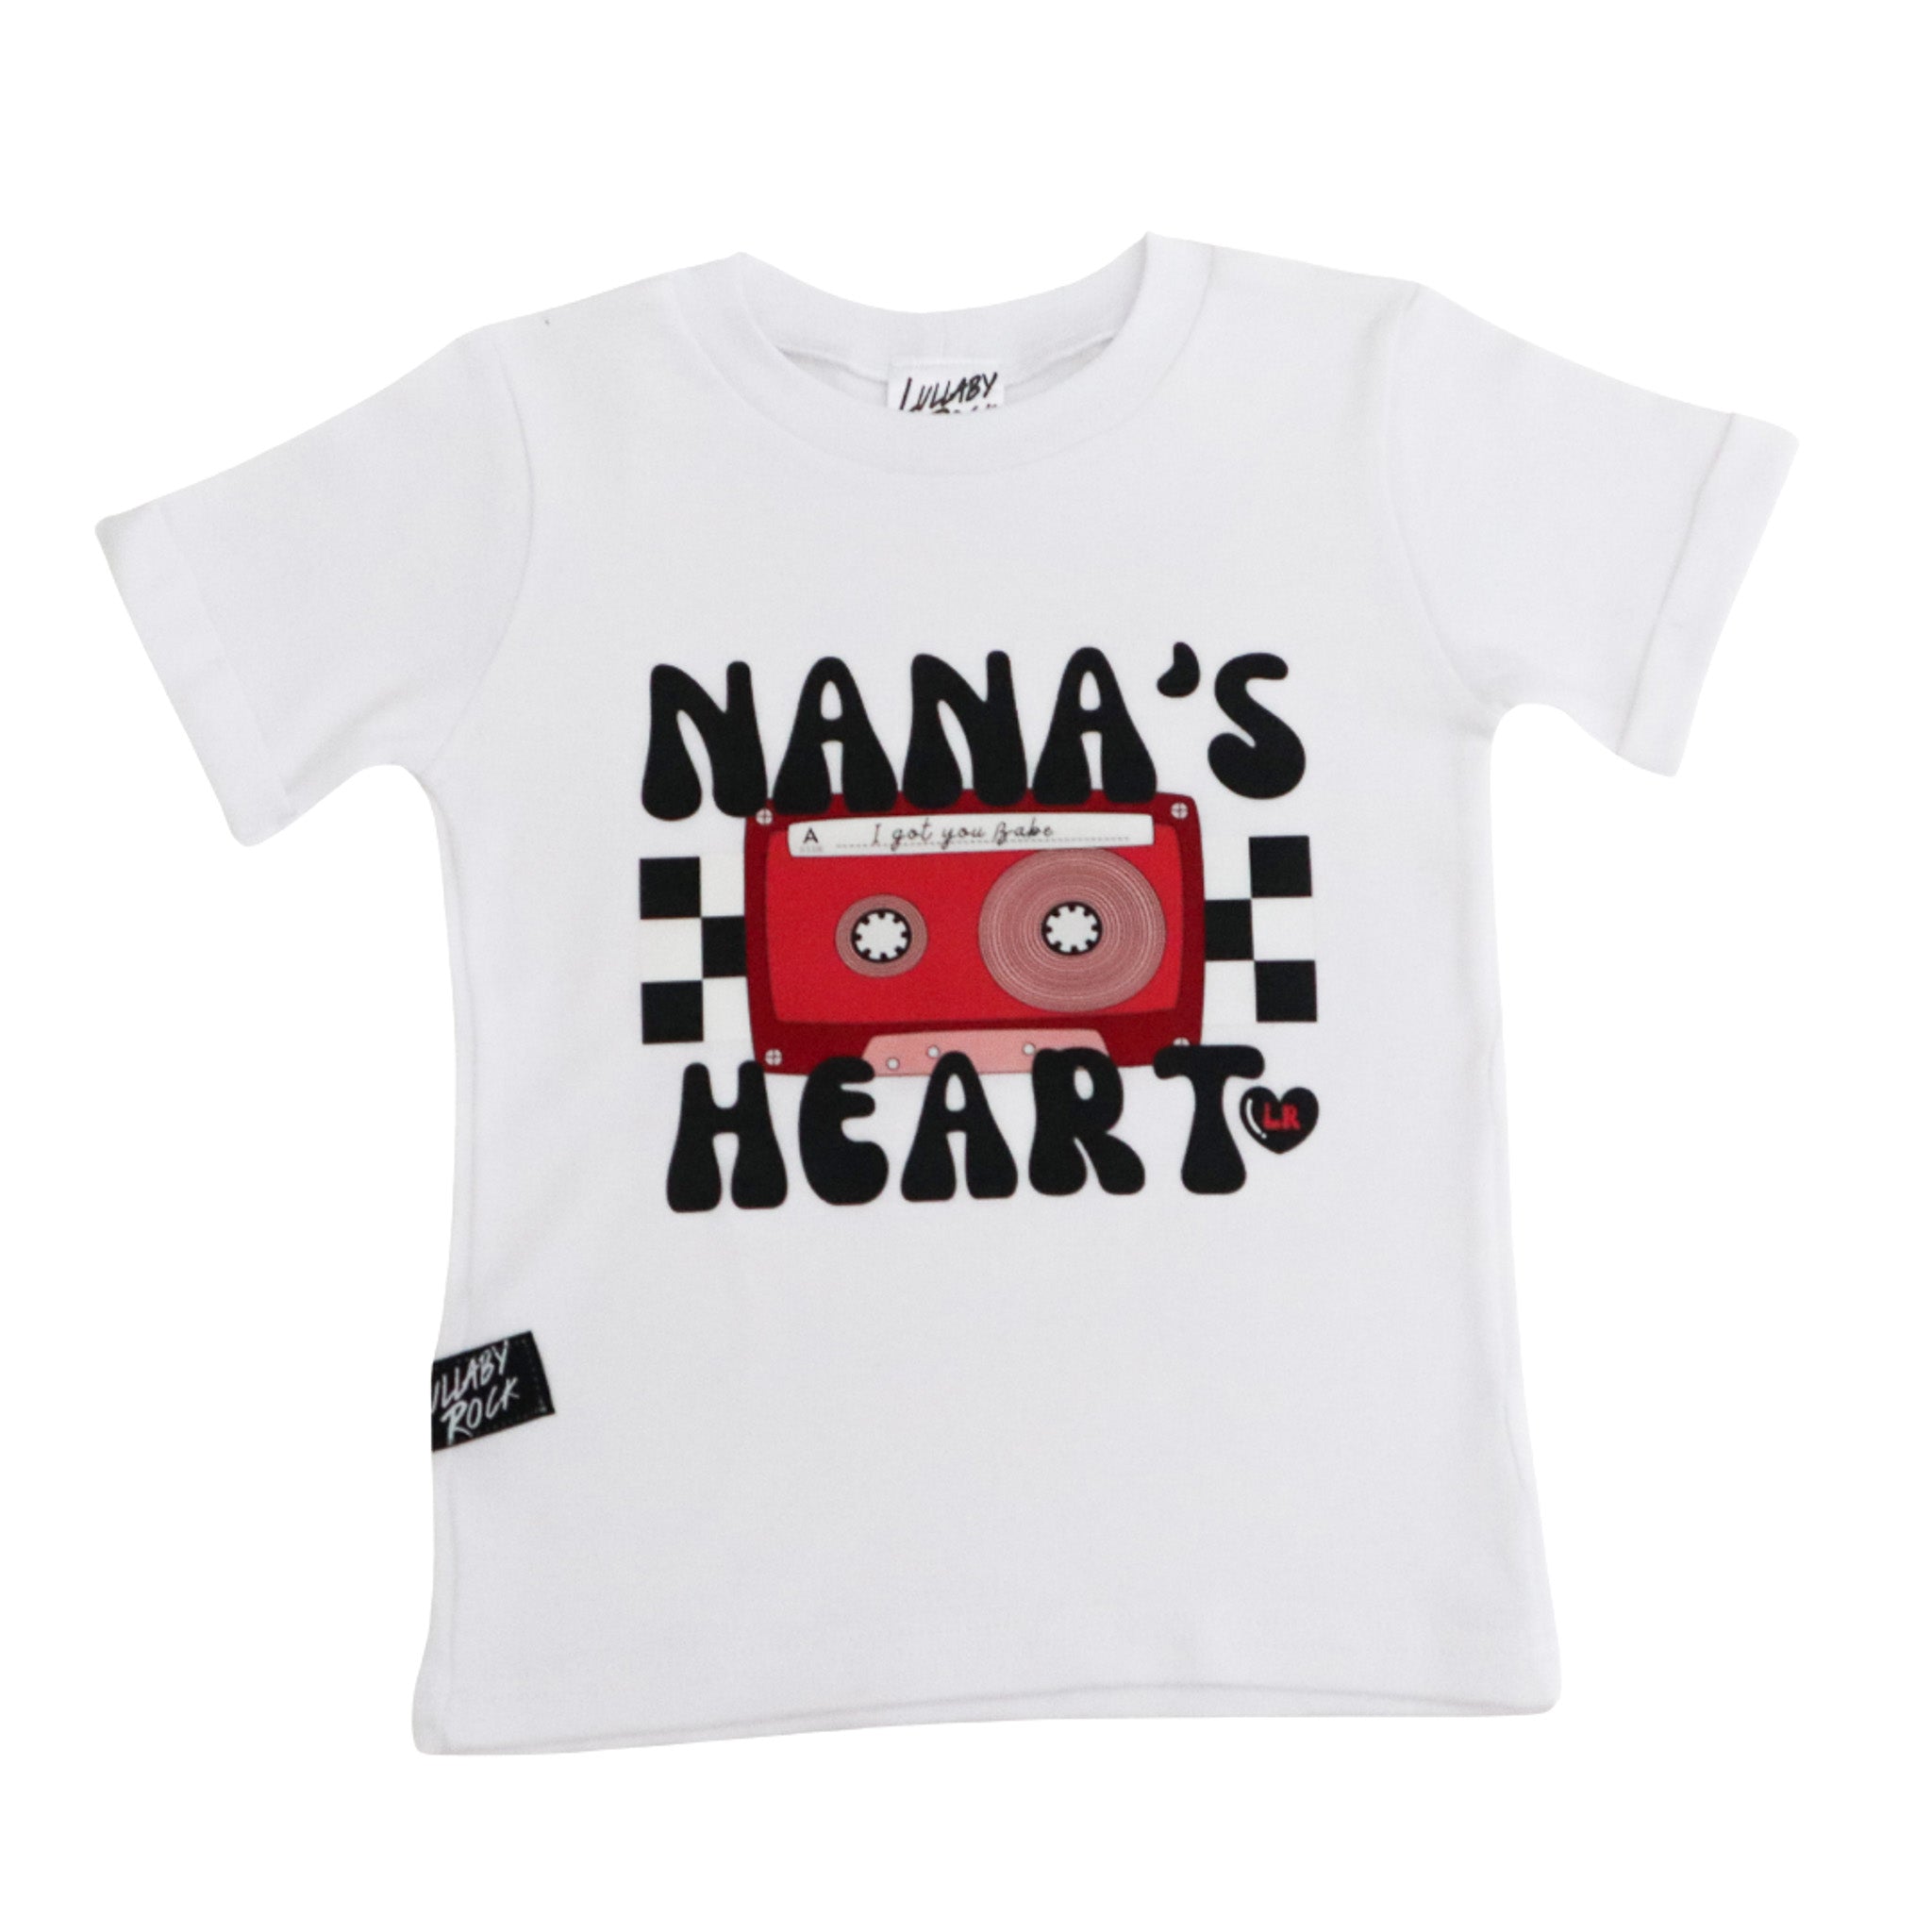 I Got You Babe - Nana's Heart